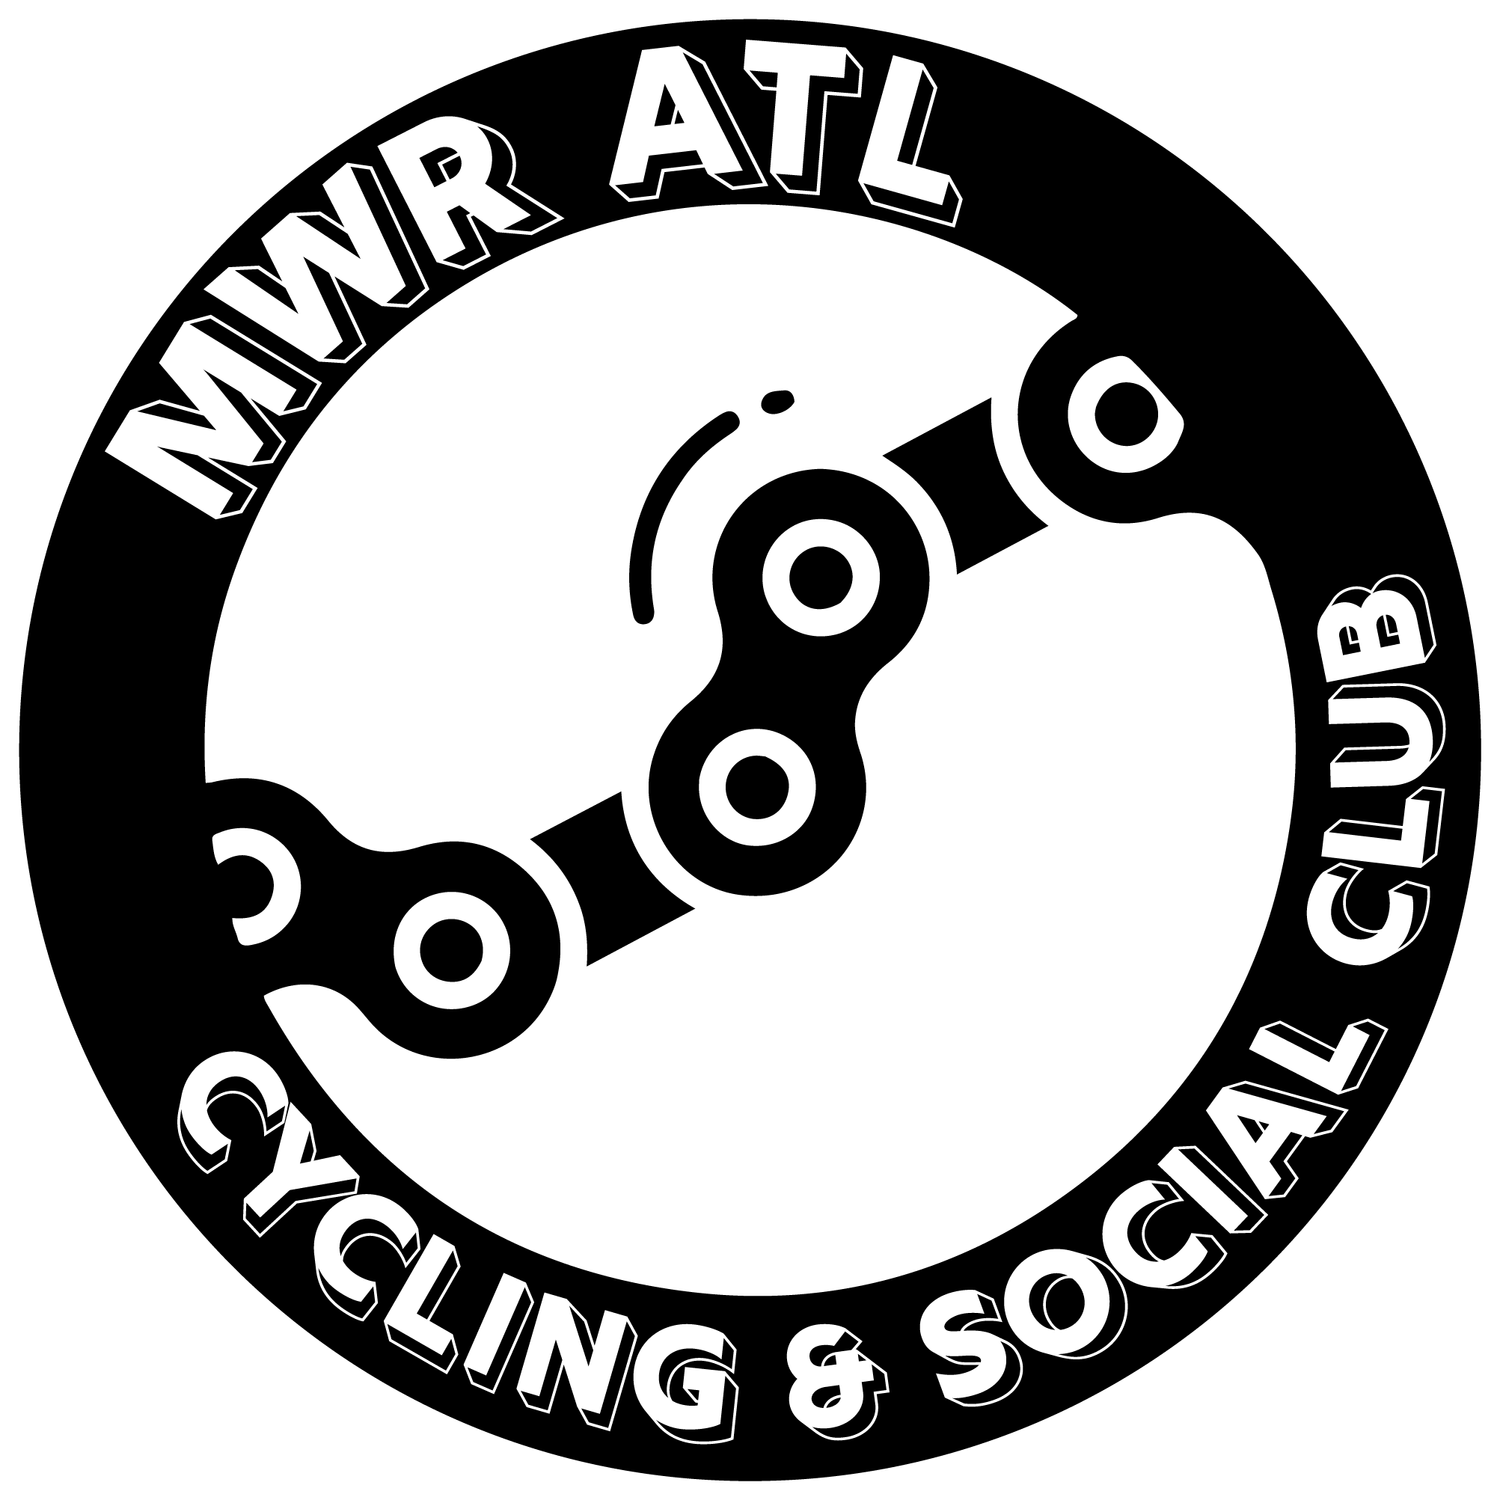 Midweek Roll ATL Cycling Club